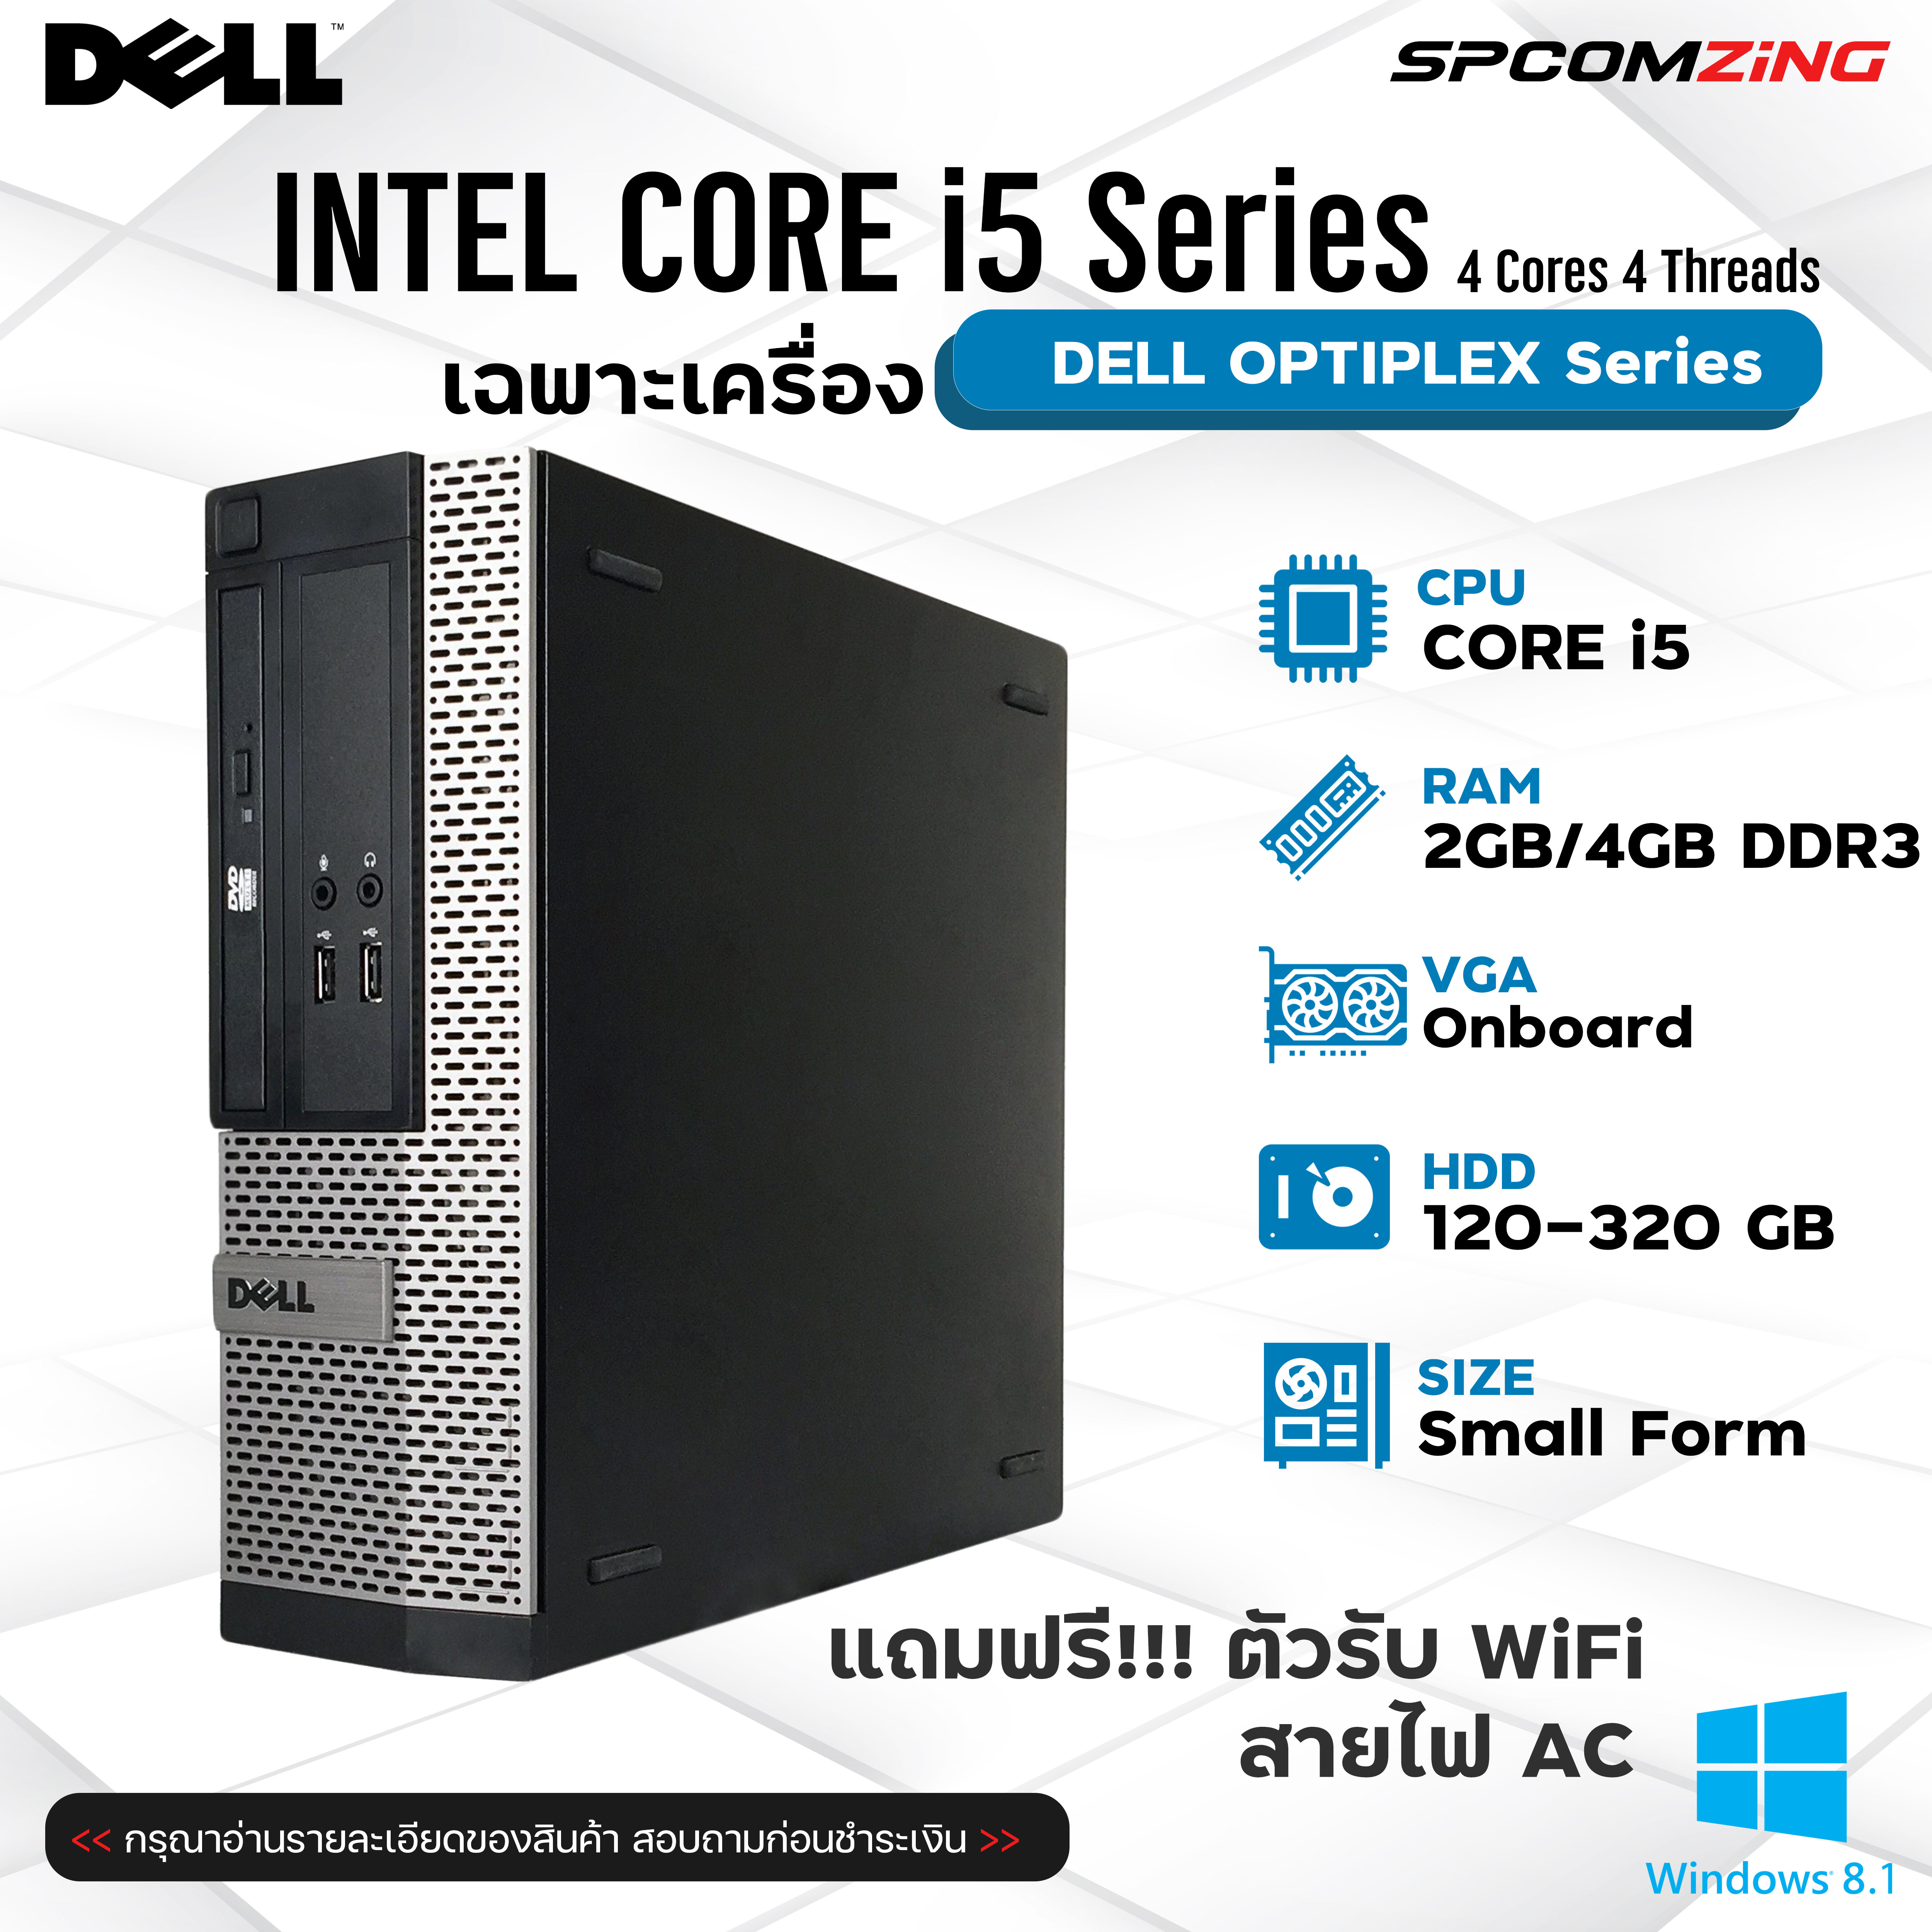 รูปภาพรายละเอียดของ [COMZING] คอมพิวเตอร์ มือสองราคาถูก พร้อมใช้งาน Dell Optiplex Core i5 เล่นอินเตอร์เน็ต ทำงานพิมพ์เอกสาร ดูหนัง